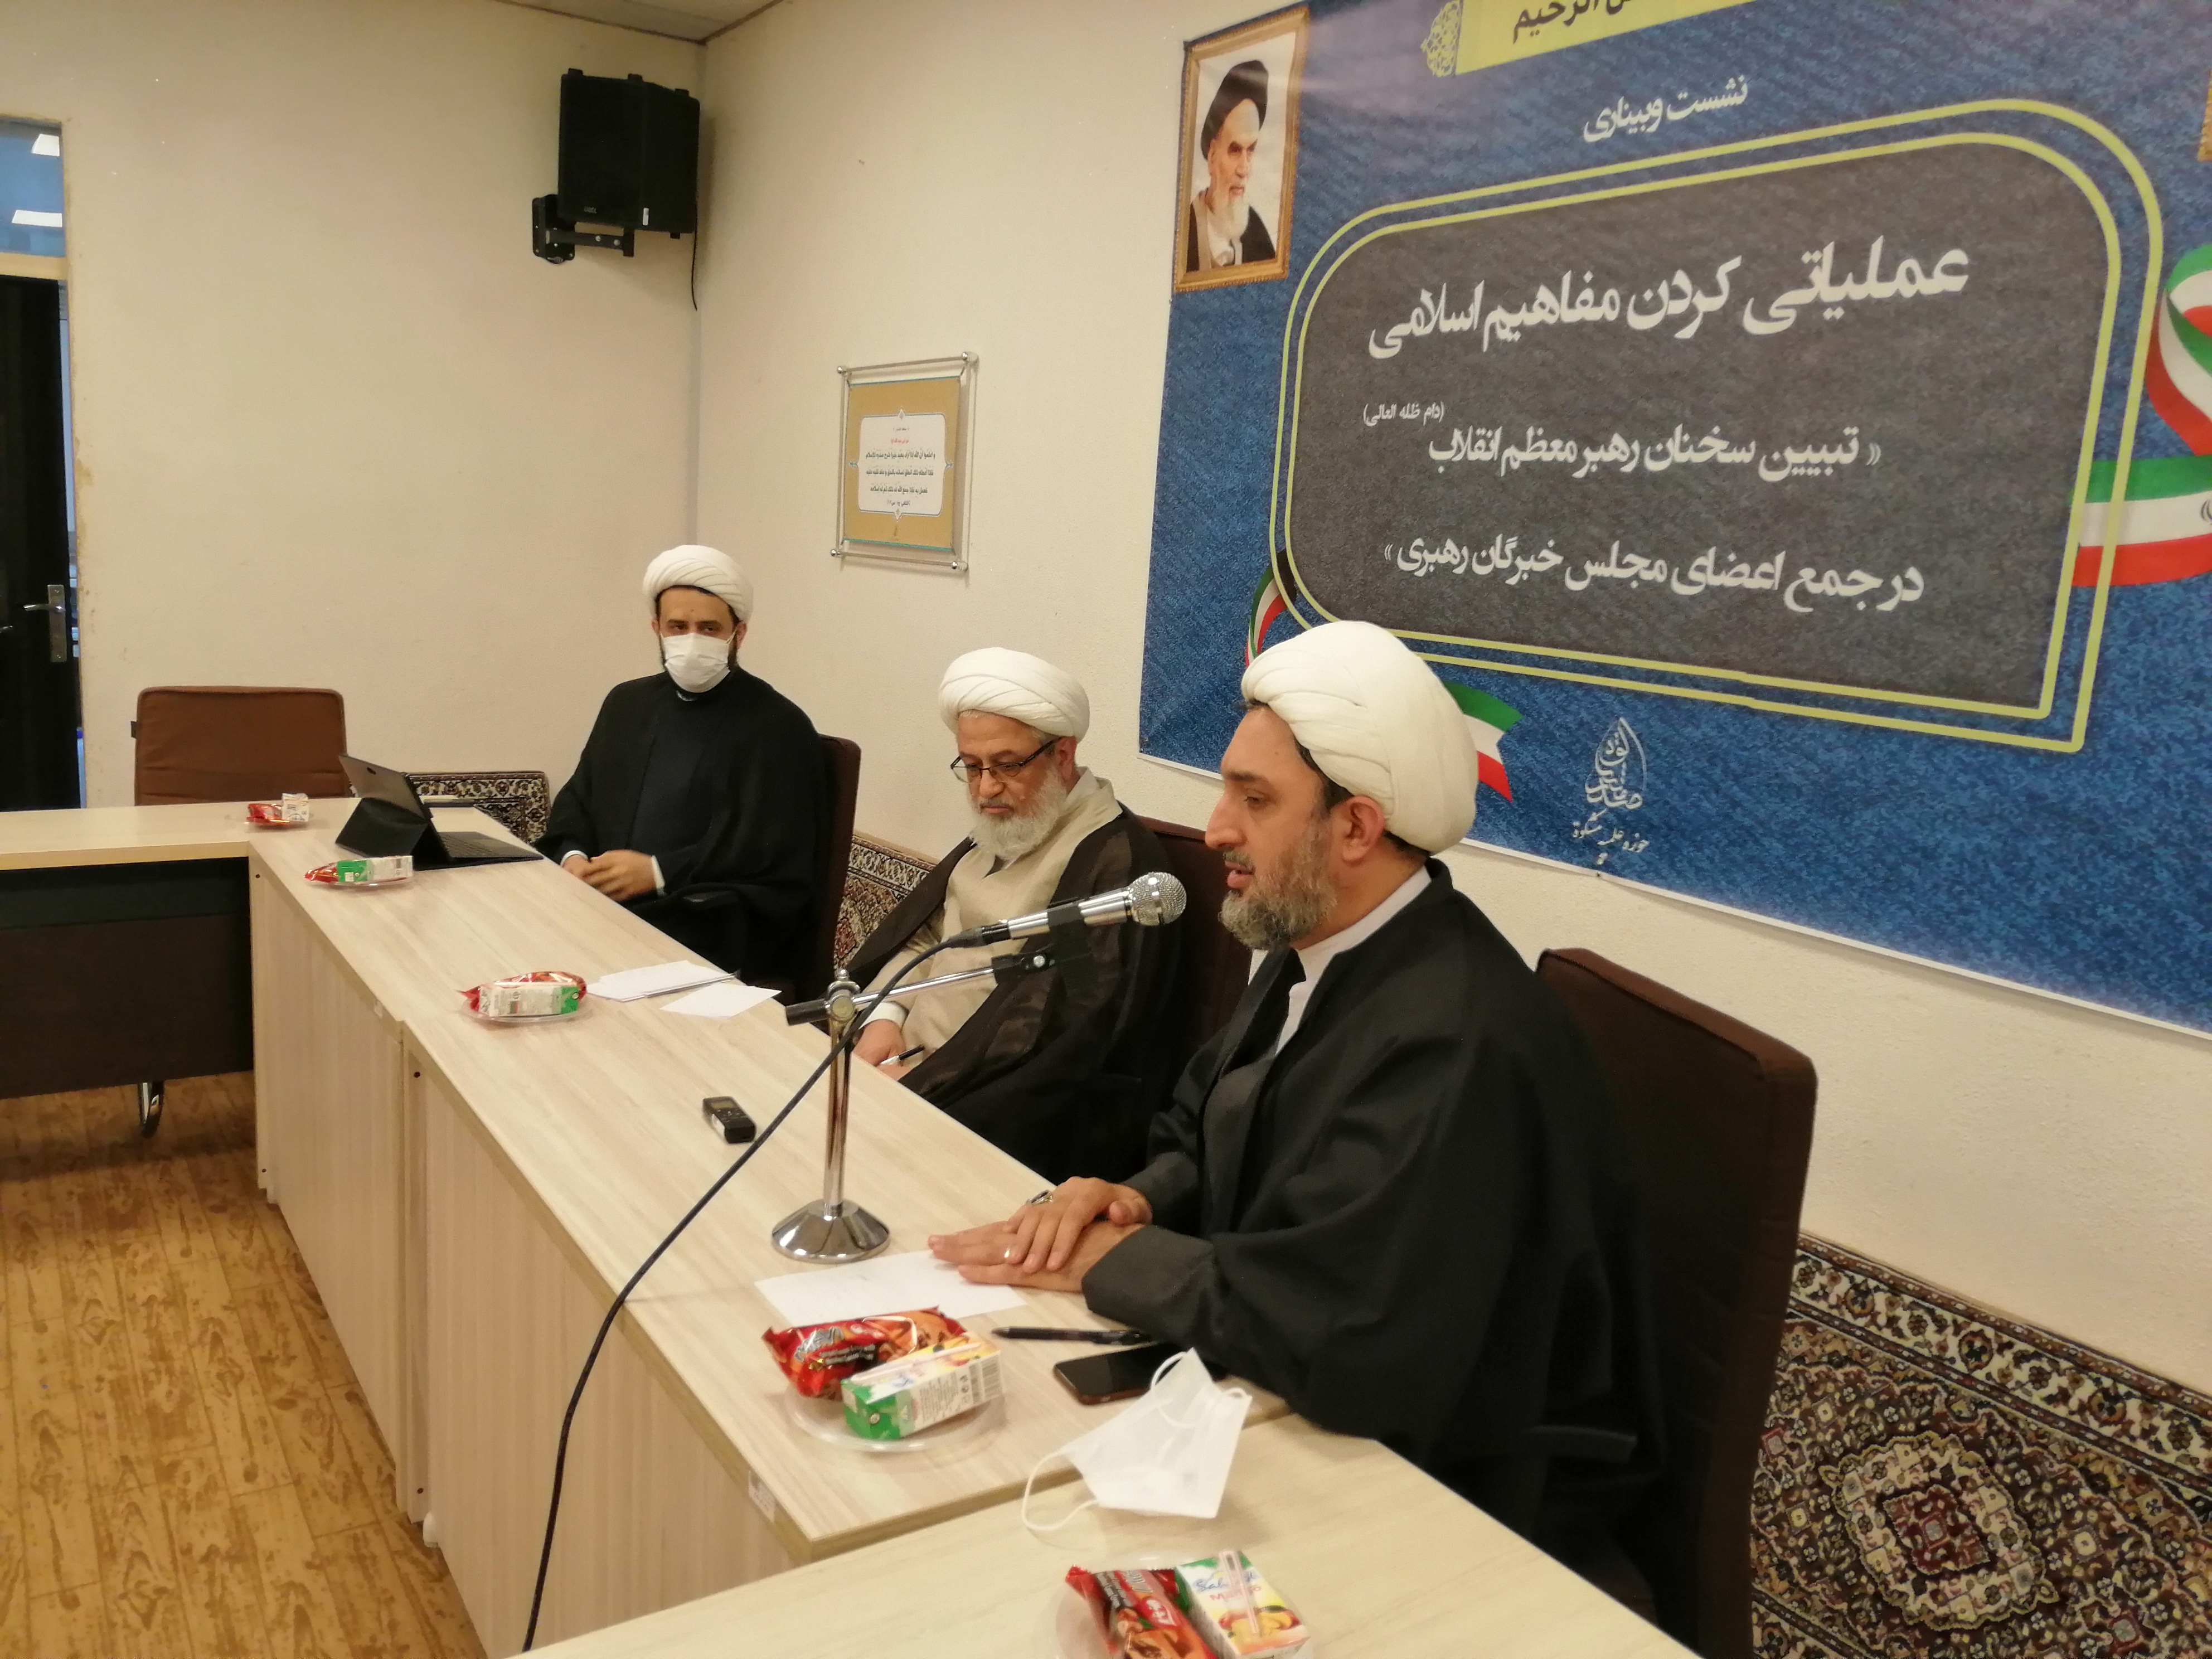 نشست وبیناری با موضوع عملیاتی کردن مفاهیم اسلامی برگزار شد